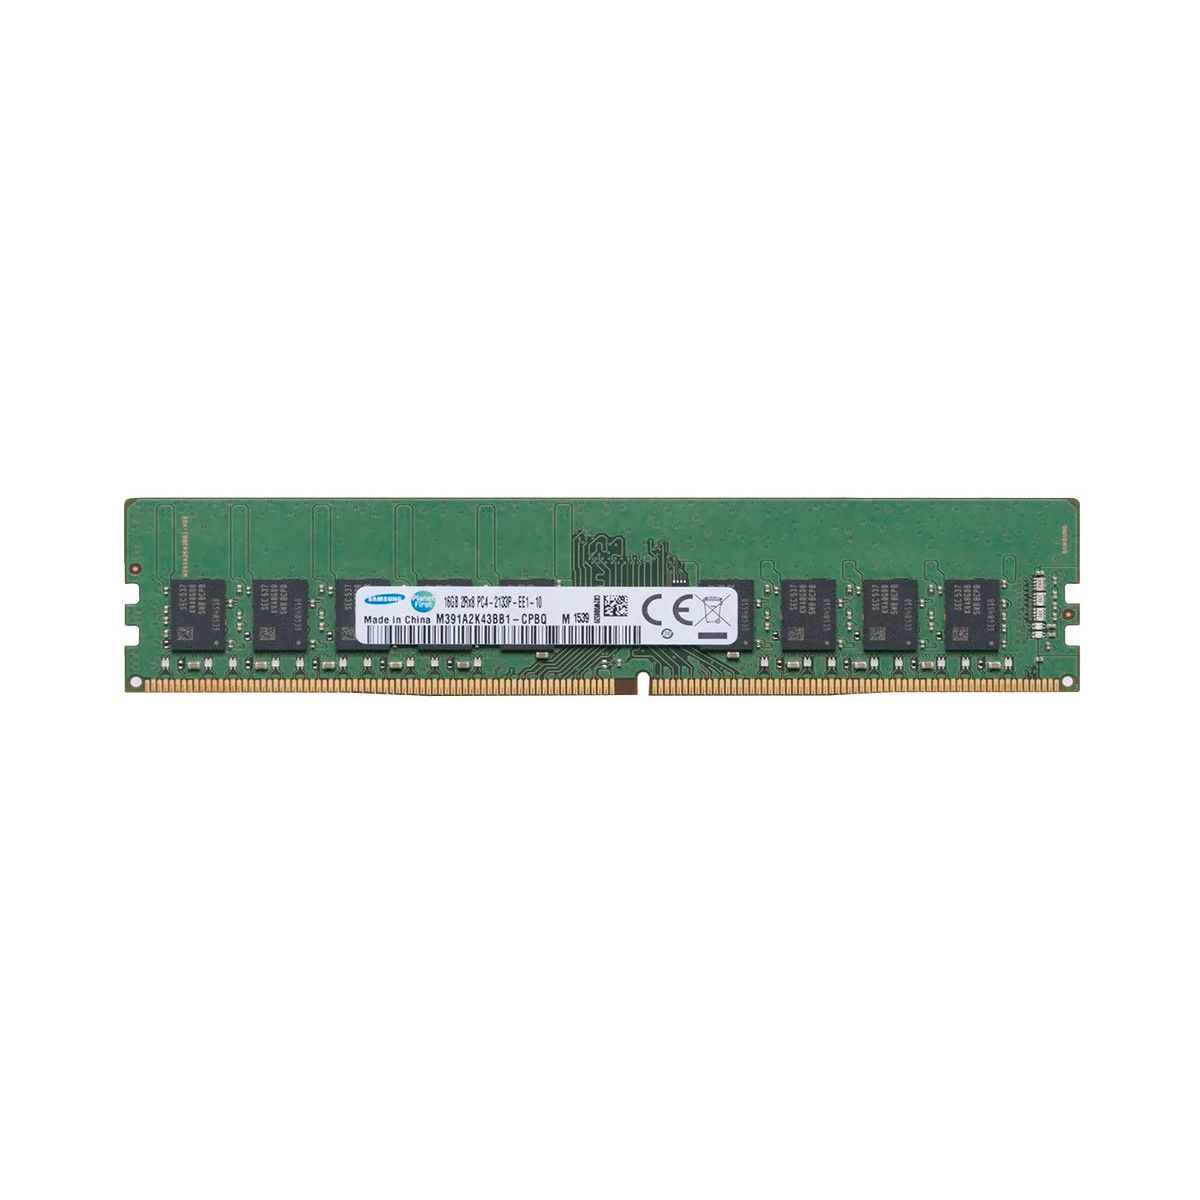 46W0816-MS -JA- Memstar 1x 16GB DDR4-2133 ECC UDIMM PC4-17000P-E